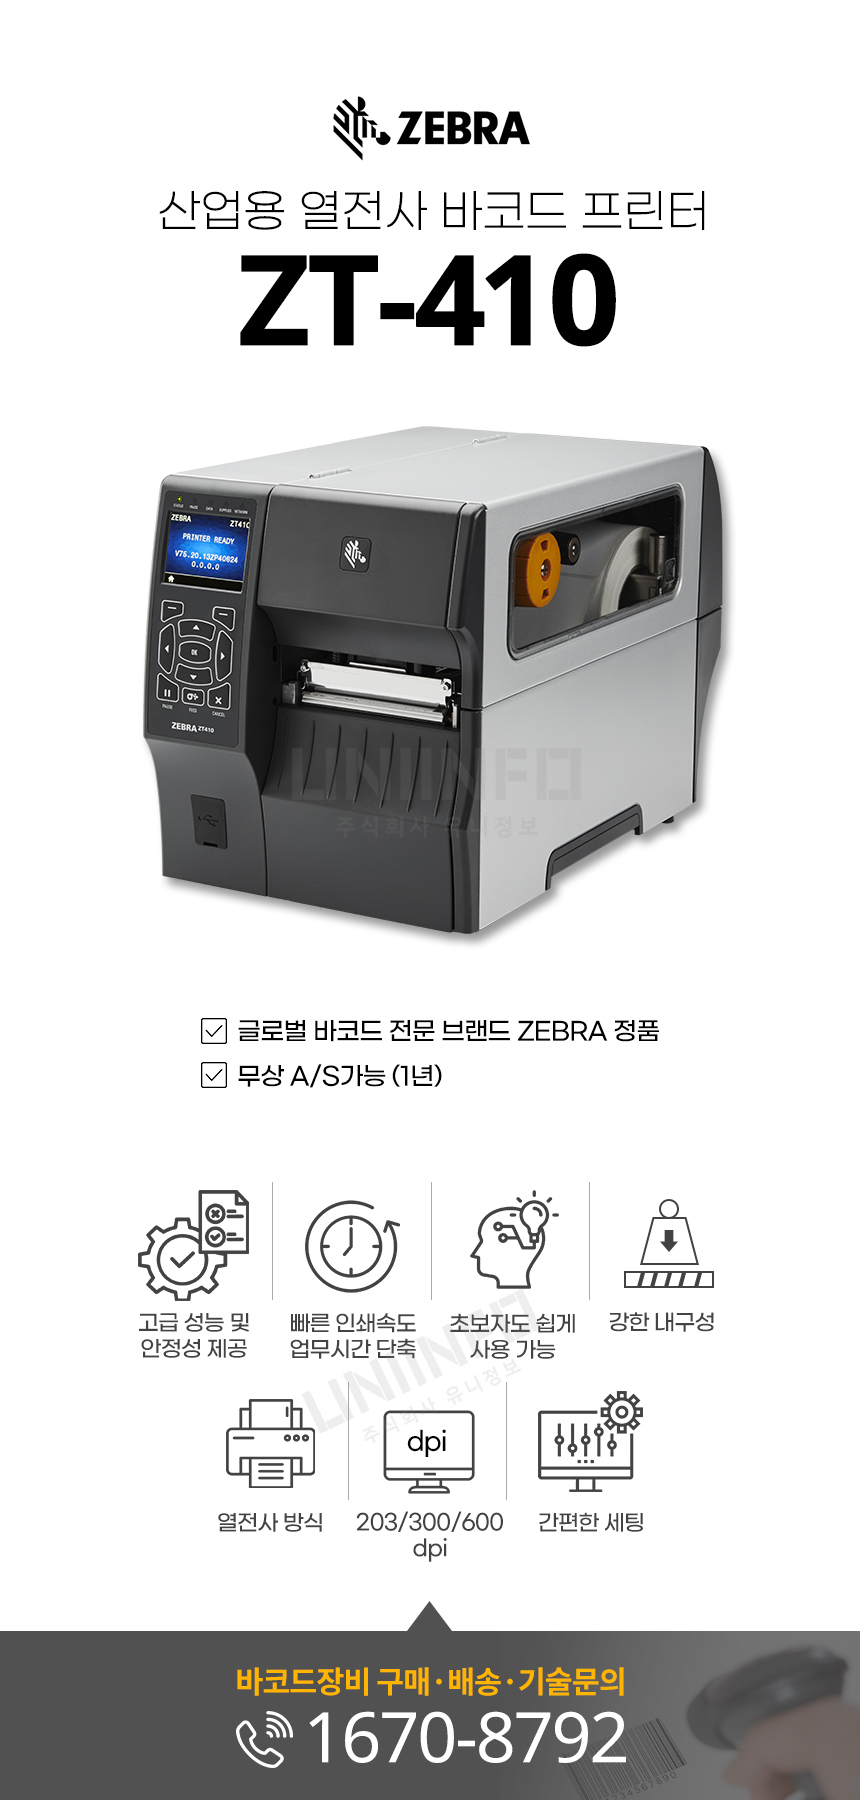 산업용 열전사 바코드 프린터 zt-410 빠른 인쇄속도 업무시간 단축 강한 내구성 203/300/600dpi 간편한 세팅